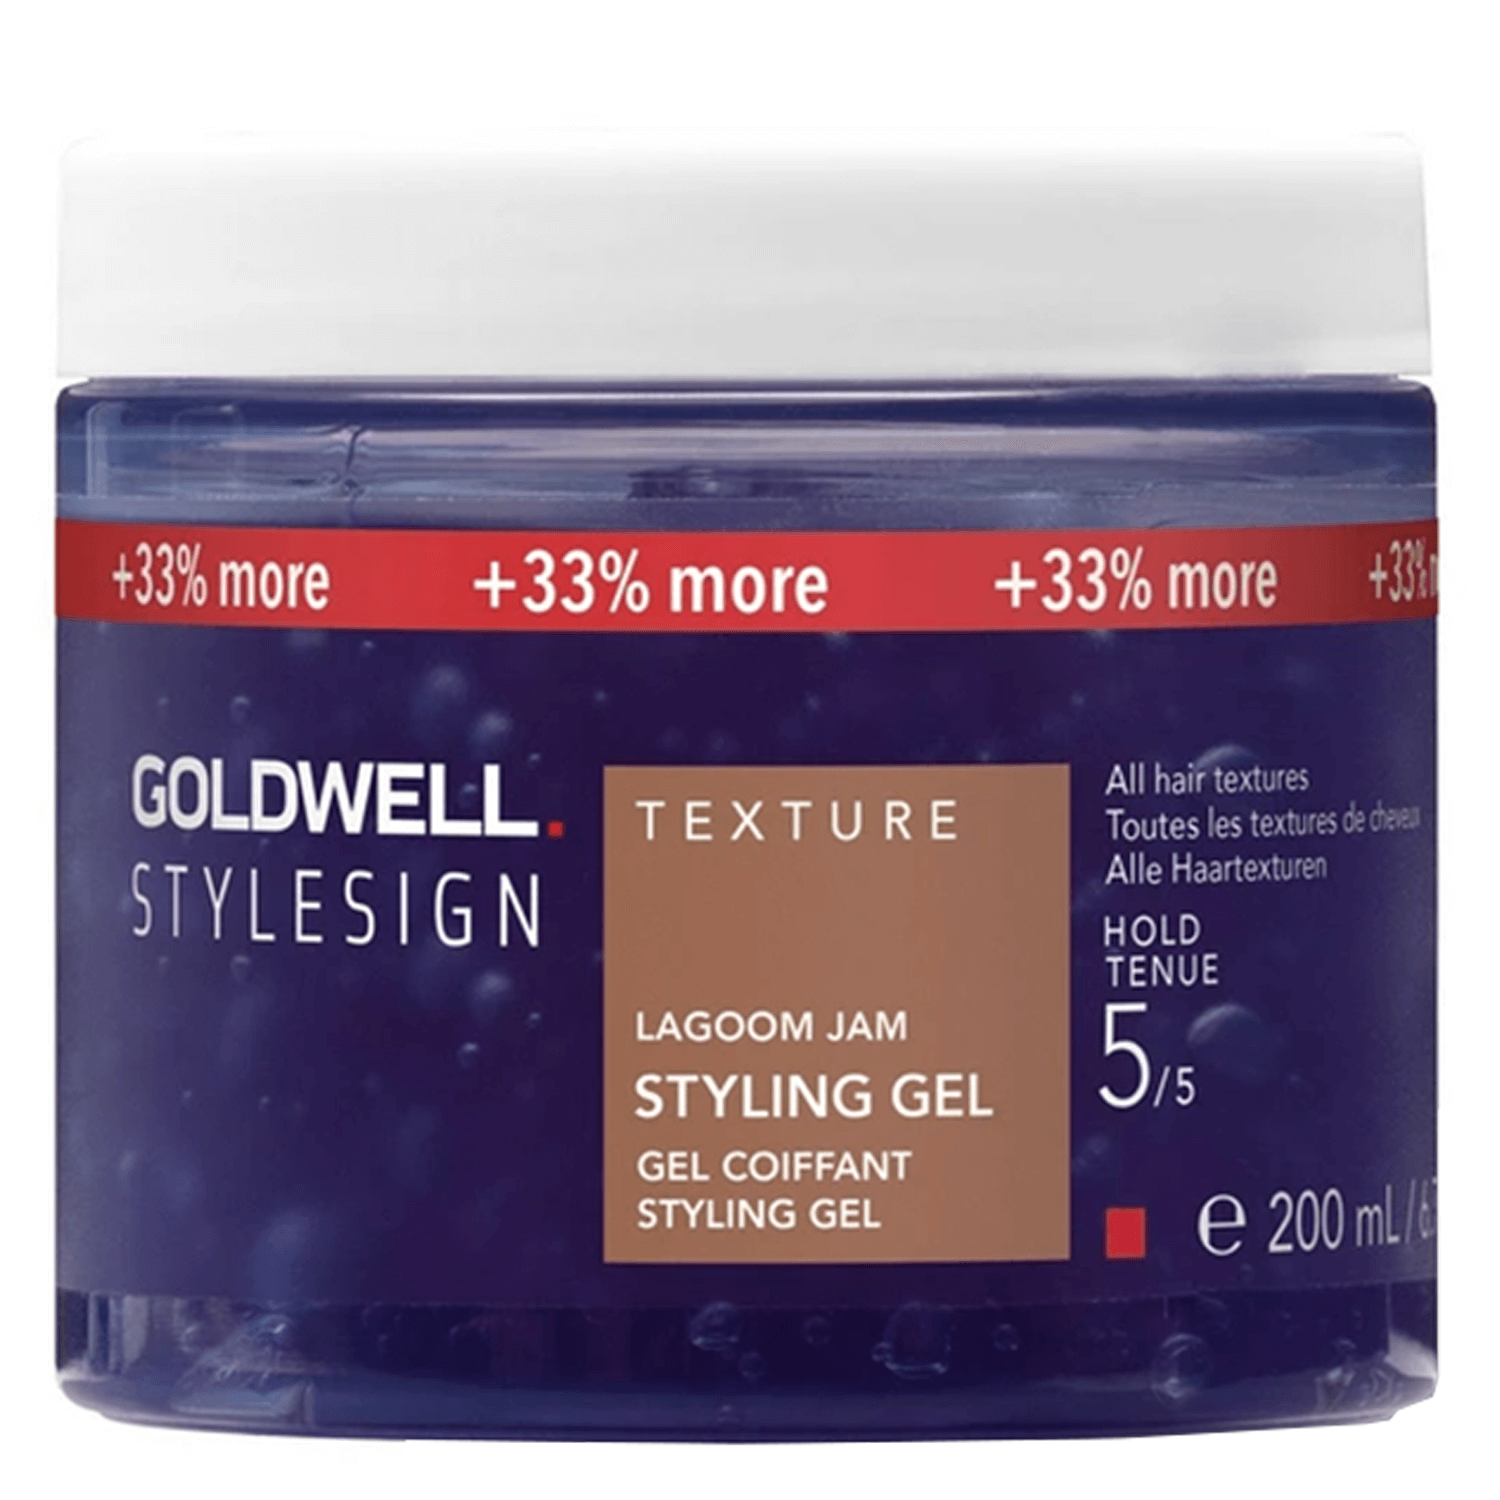 Produktbild von StyleSign - texture lagoom jam styling gel xxl